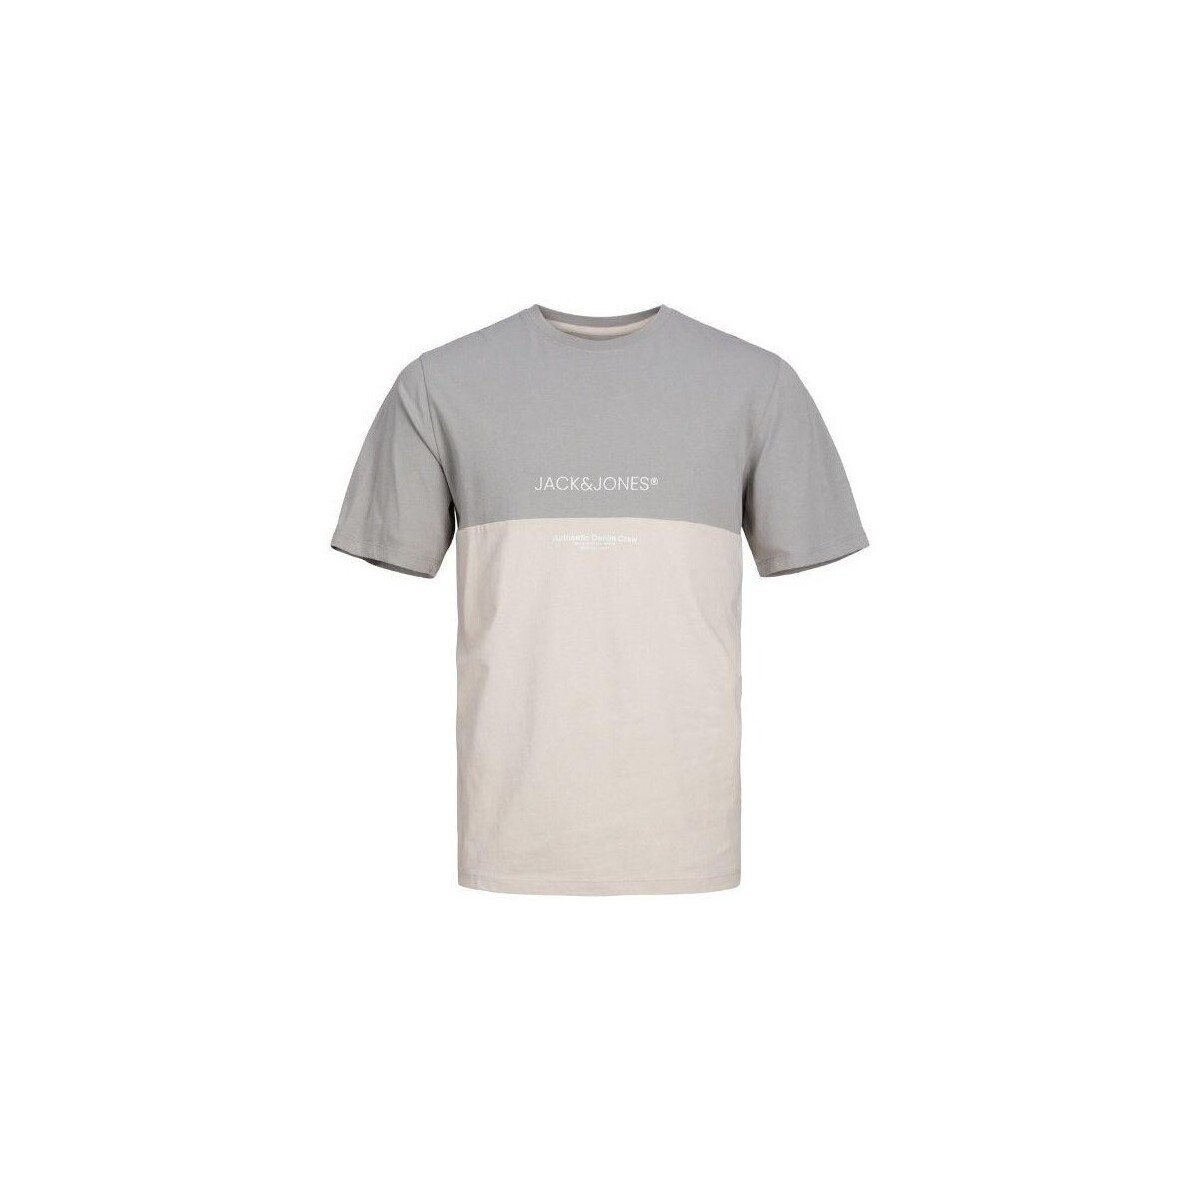 Vêtements Homme T-shirts manches courtes Jack & Jones 12250703 ERYDER BLOCKING TEE Multicolore